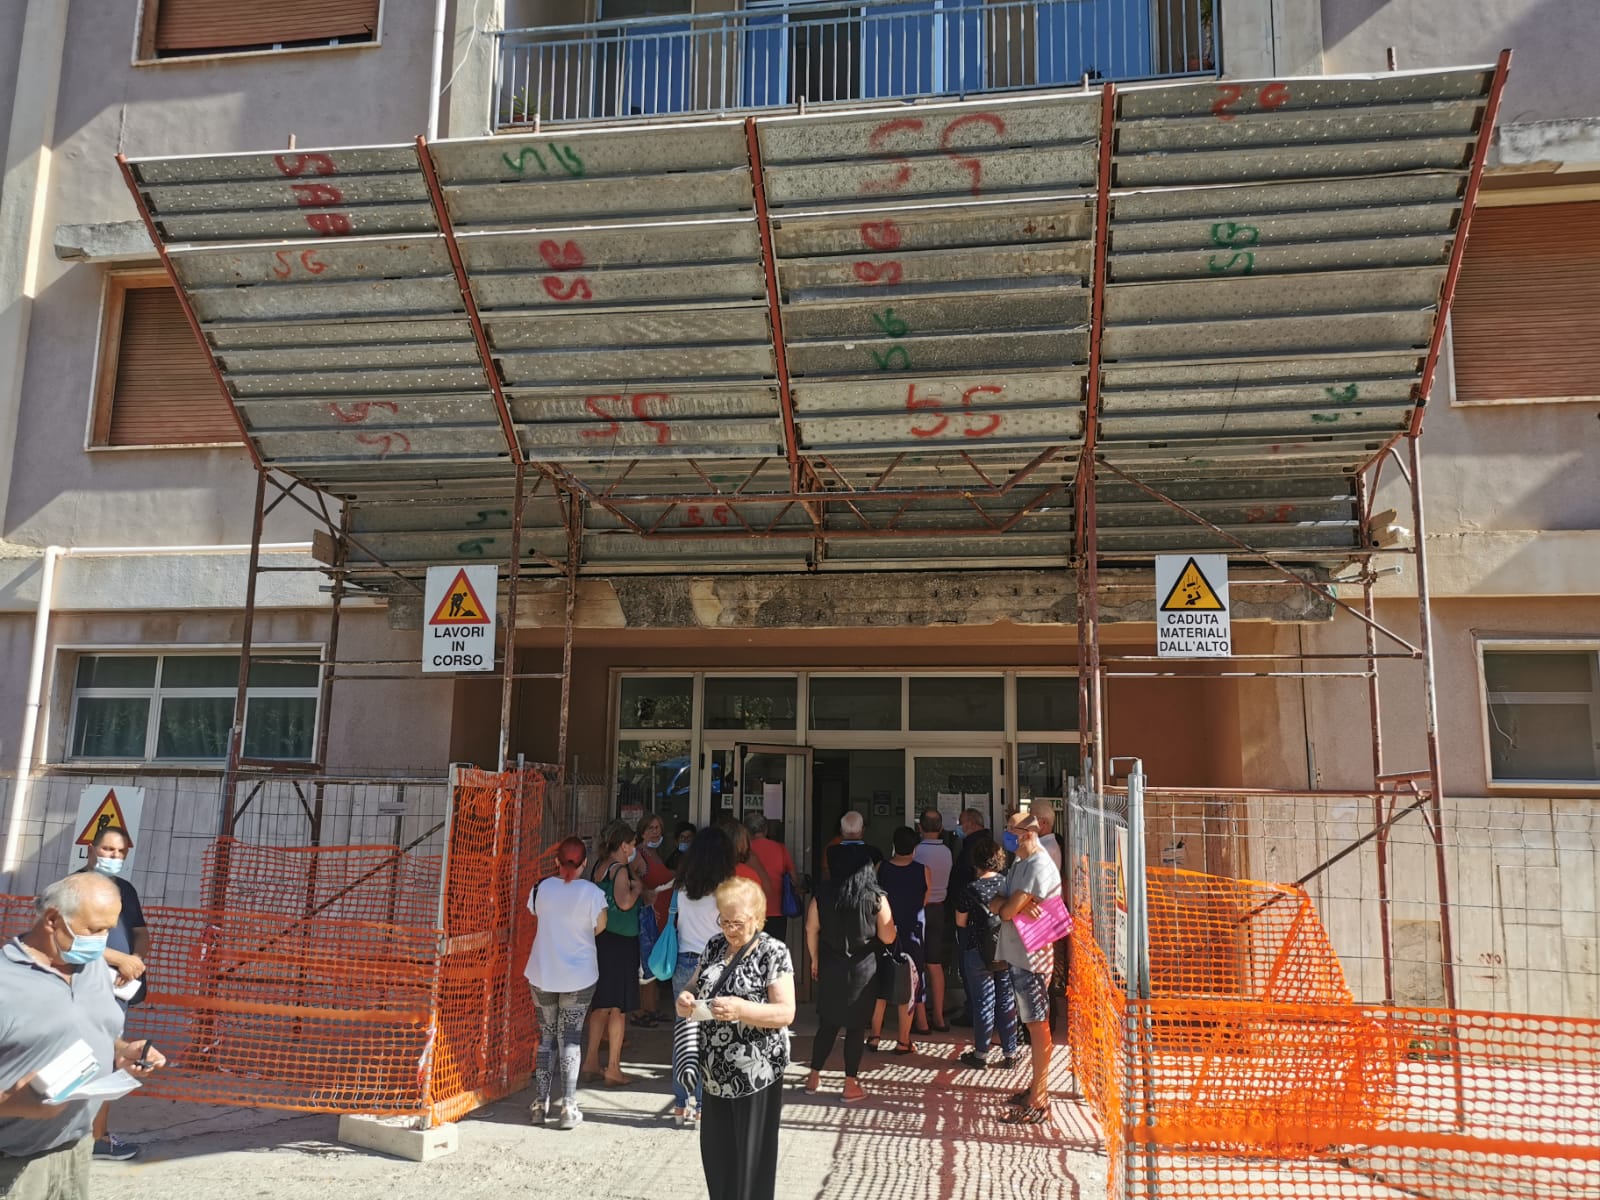 L’ospedale di Scilla cade a pezzi in attesa degli 8 milioni spariti nel nulla